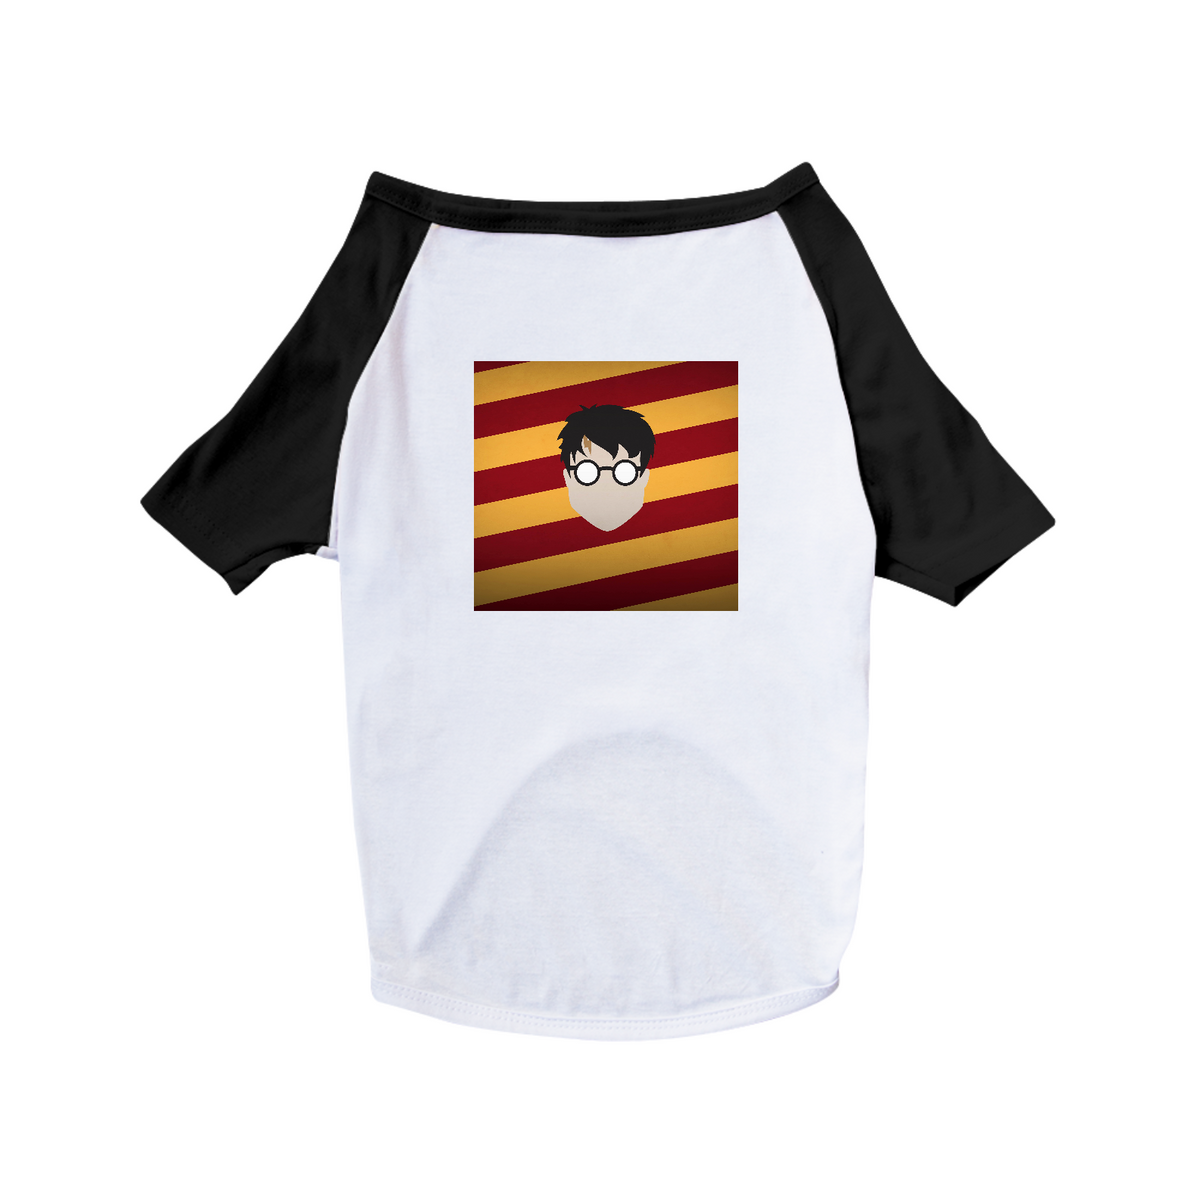 Nome do produto: Harry Potter - Camisa pra pet